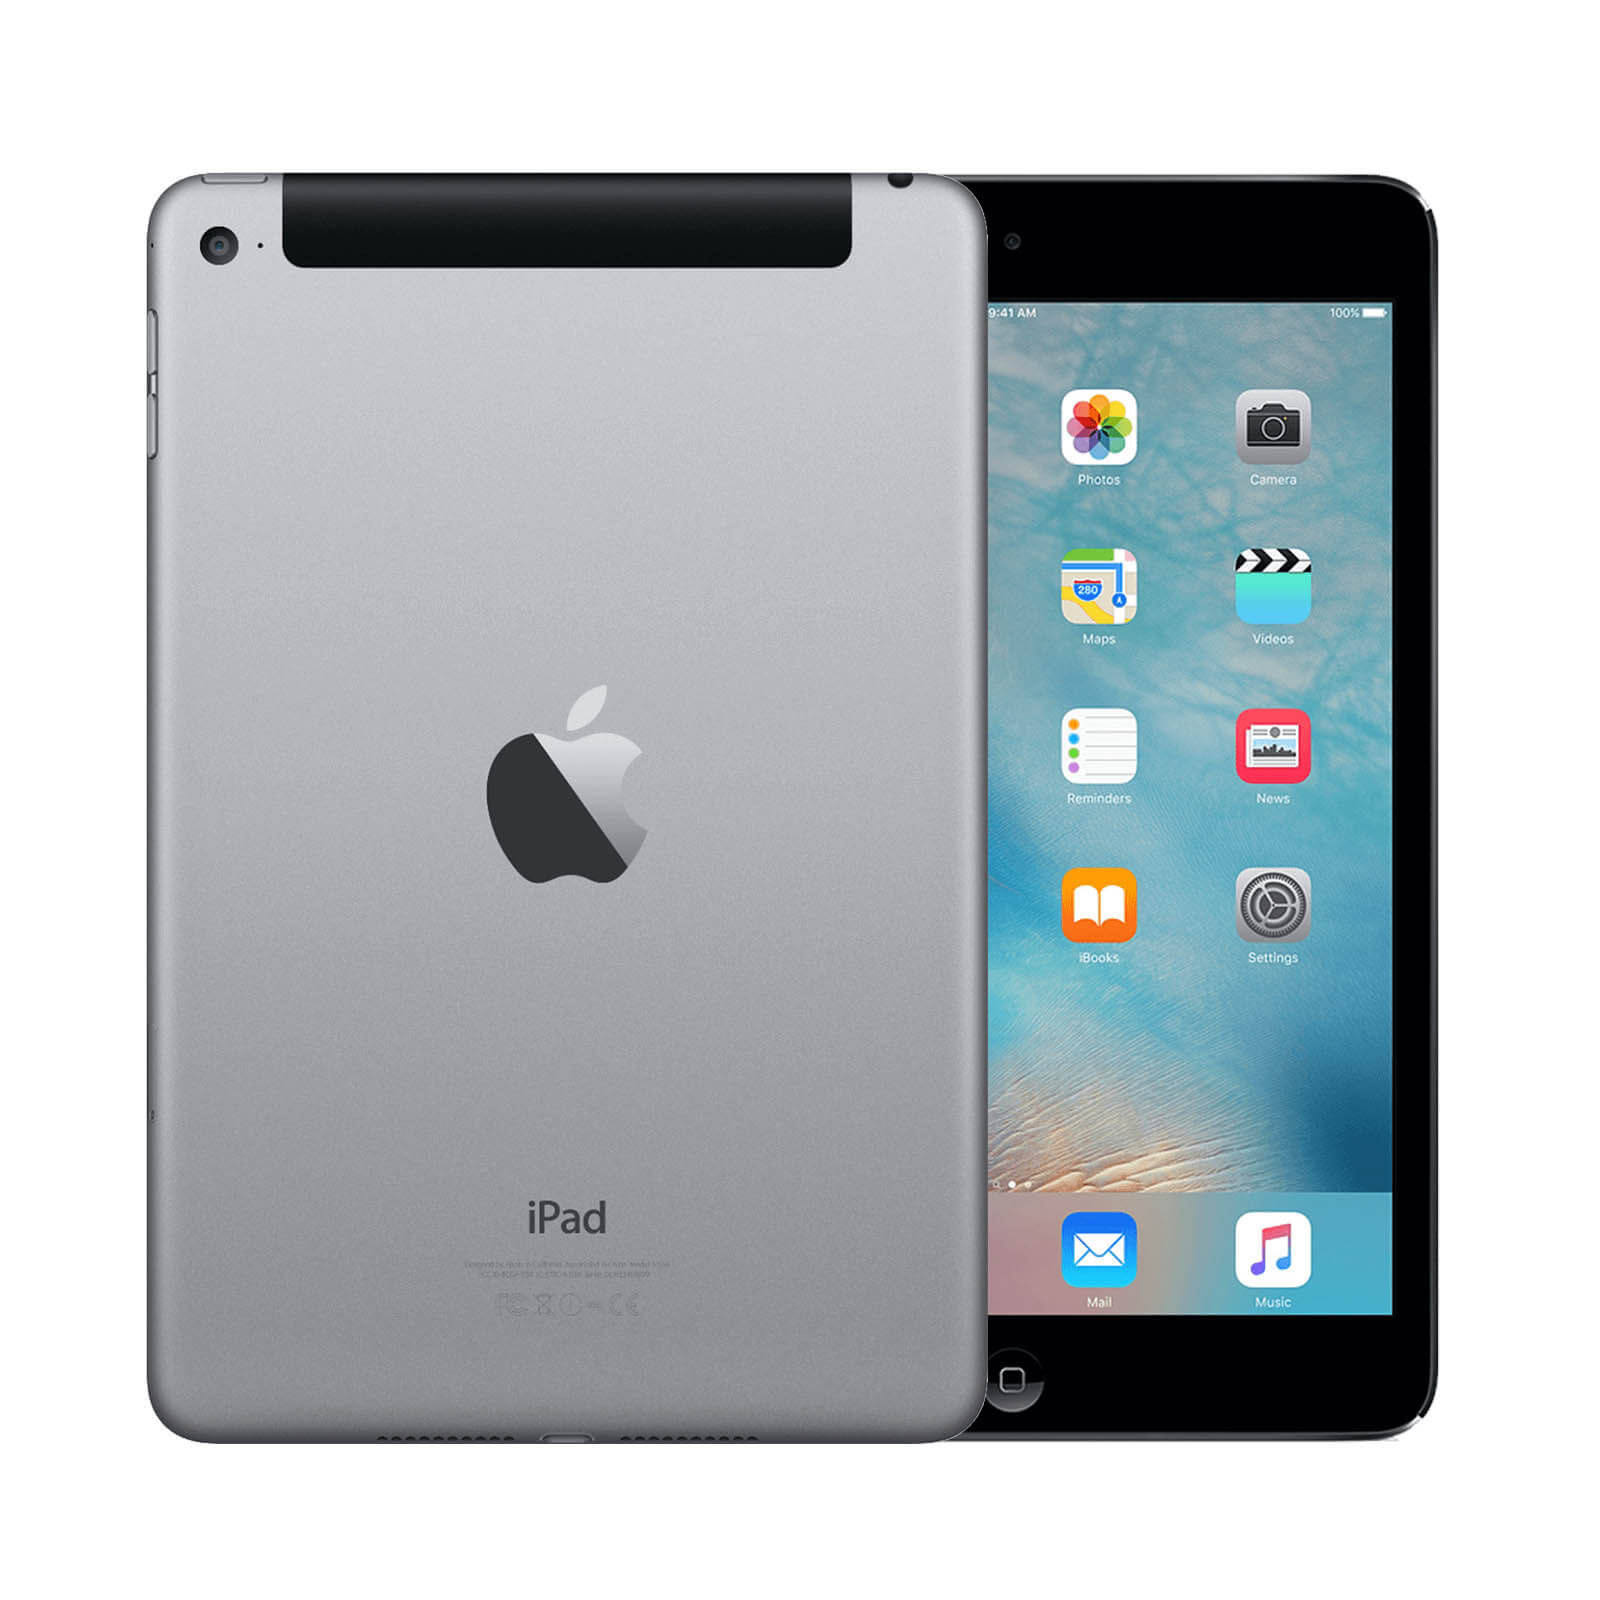 Apple iPad Mini 4 16GB Space Grey WiFi & Cellular - Good 16GB Space Grey Good